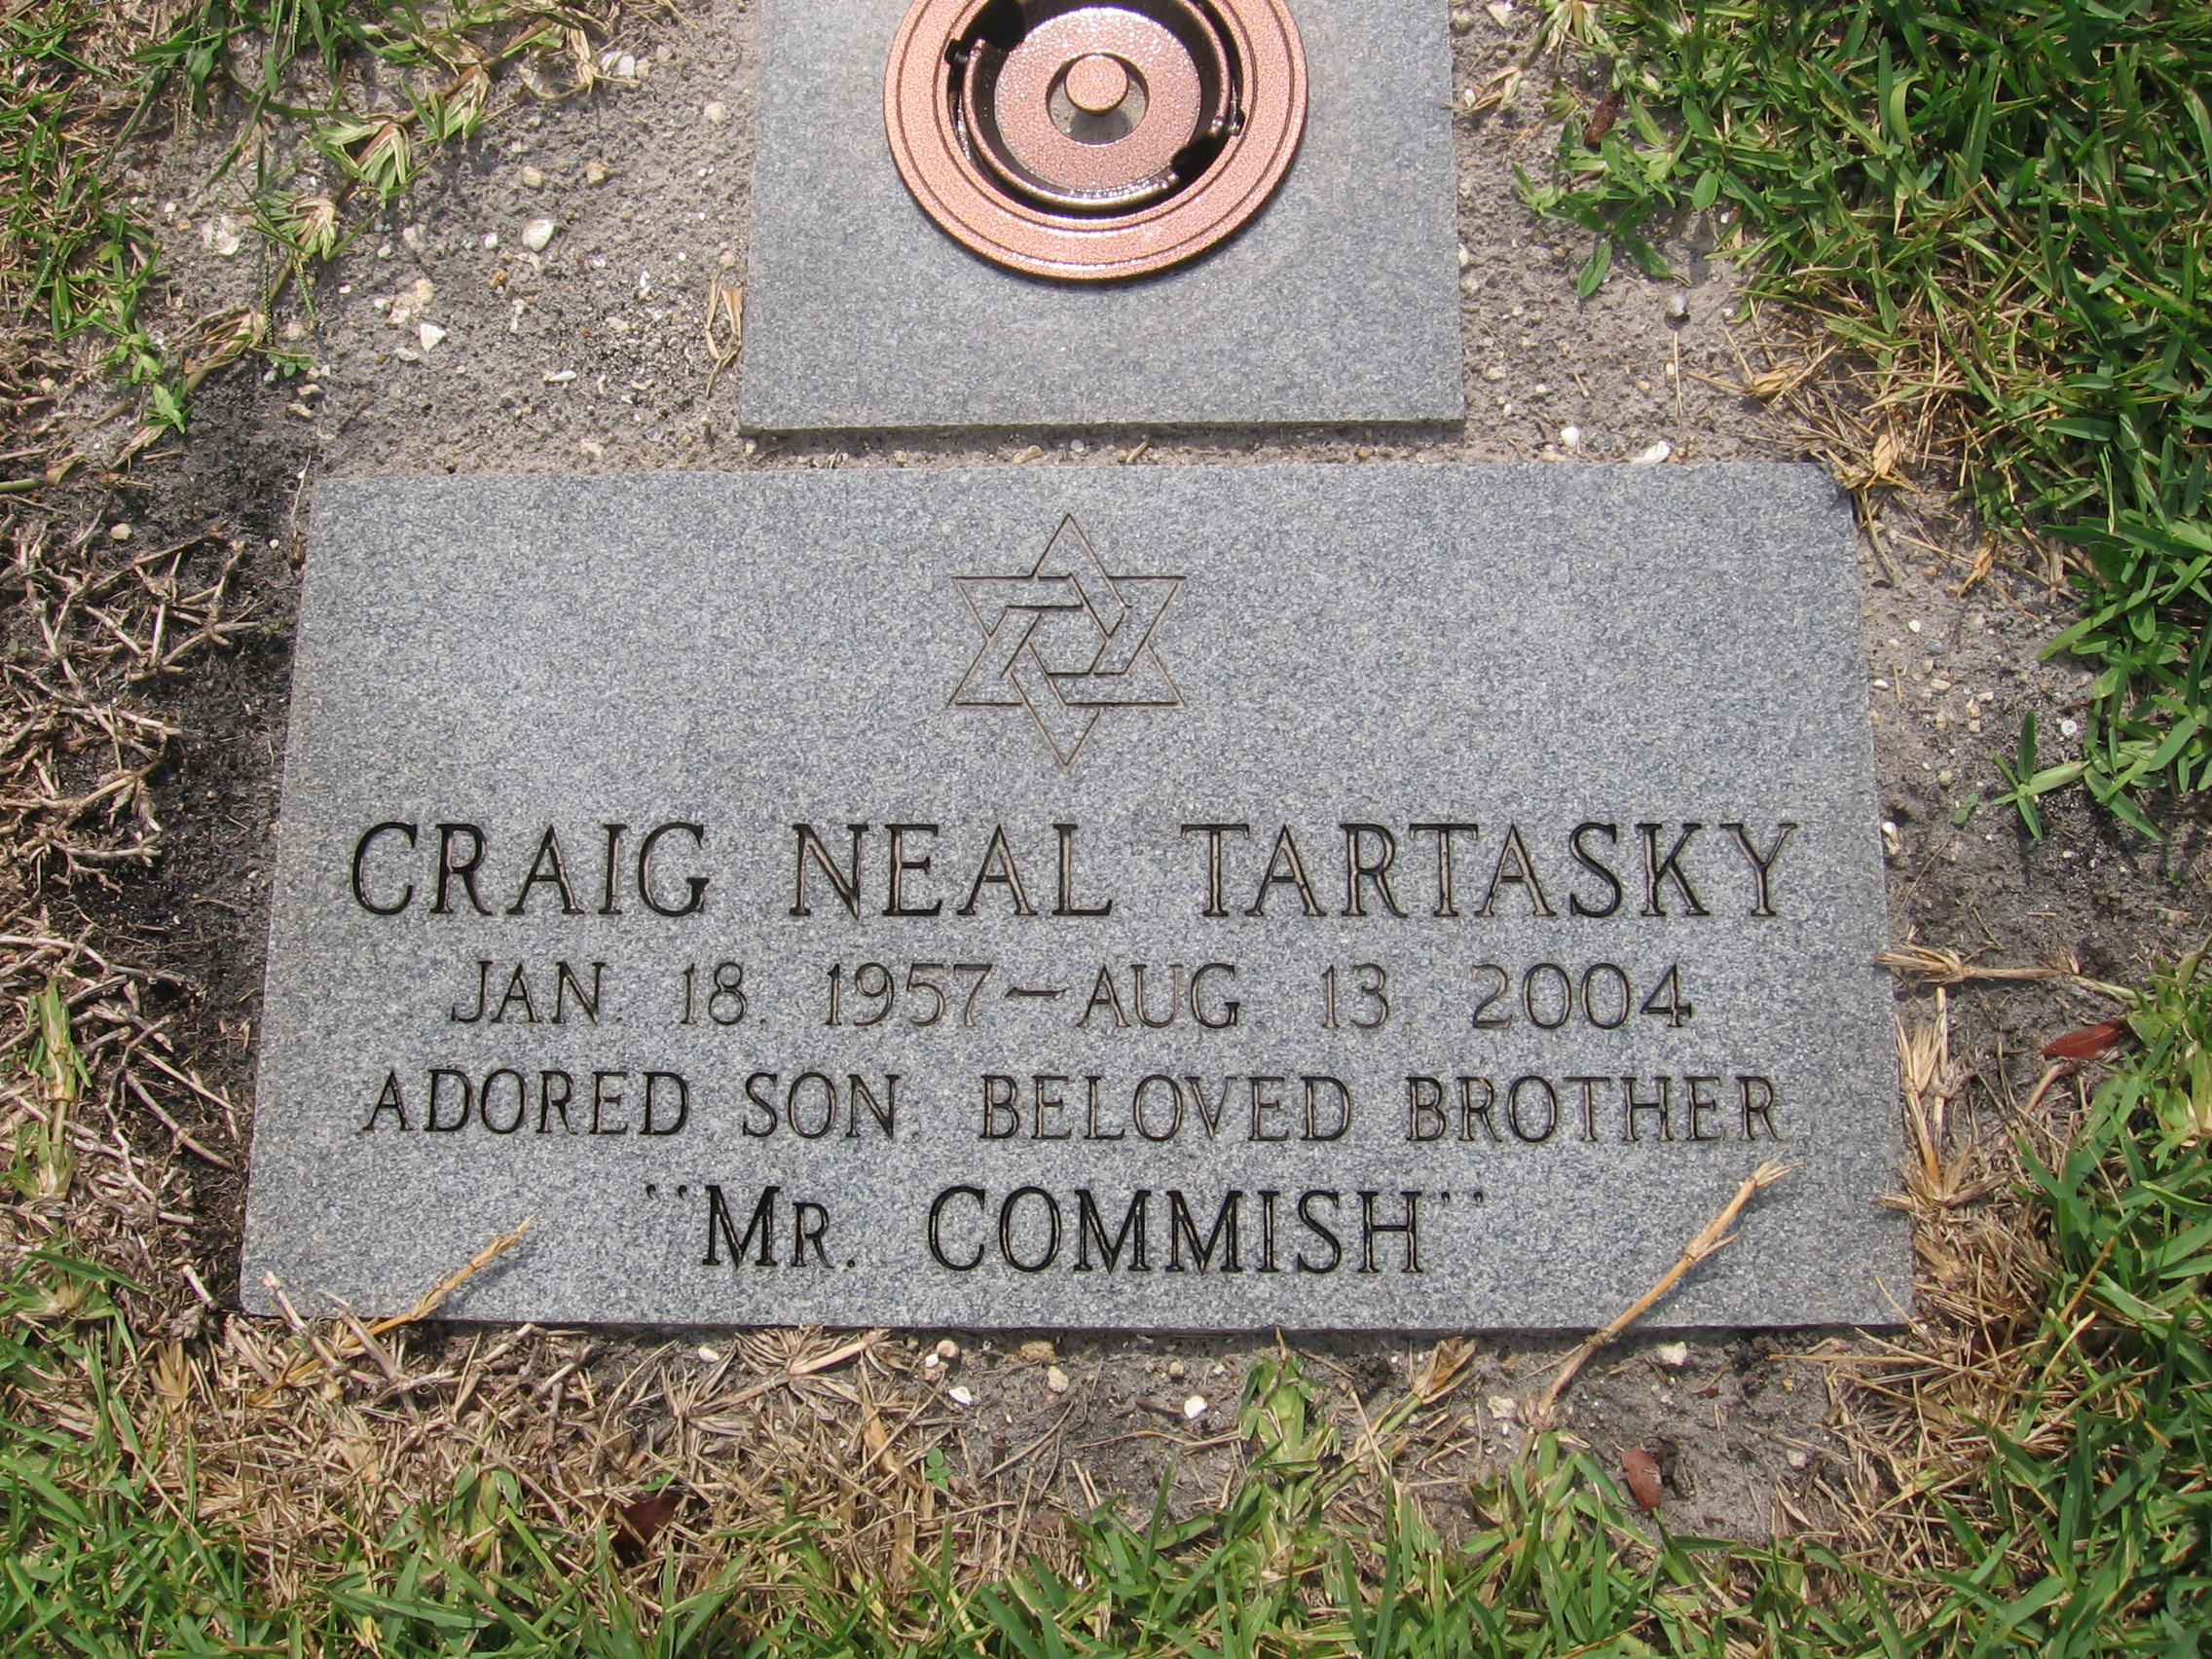 Craig Neal Tartasky